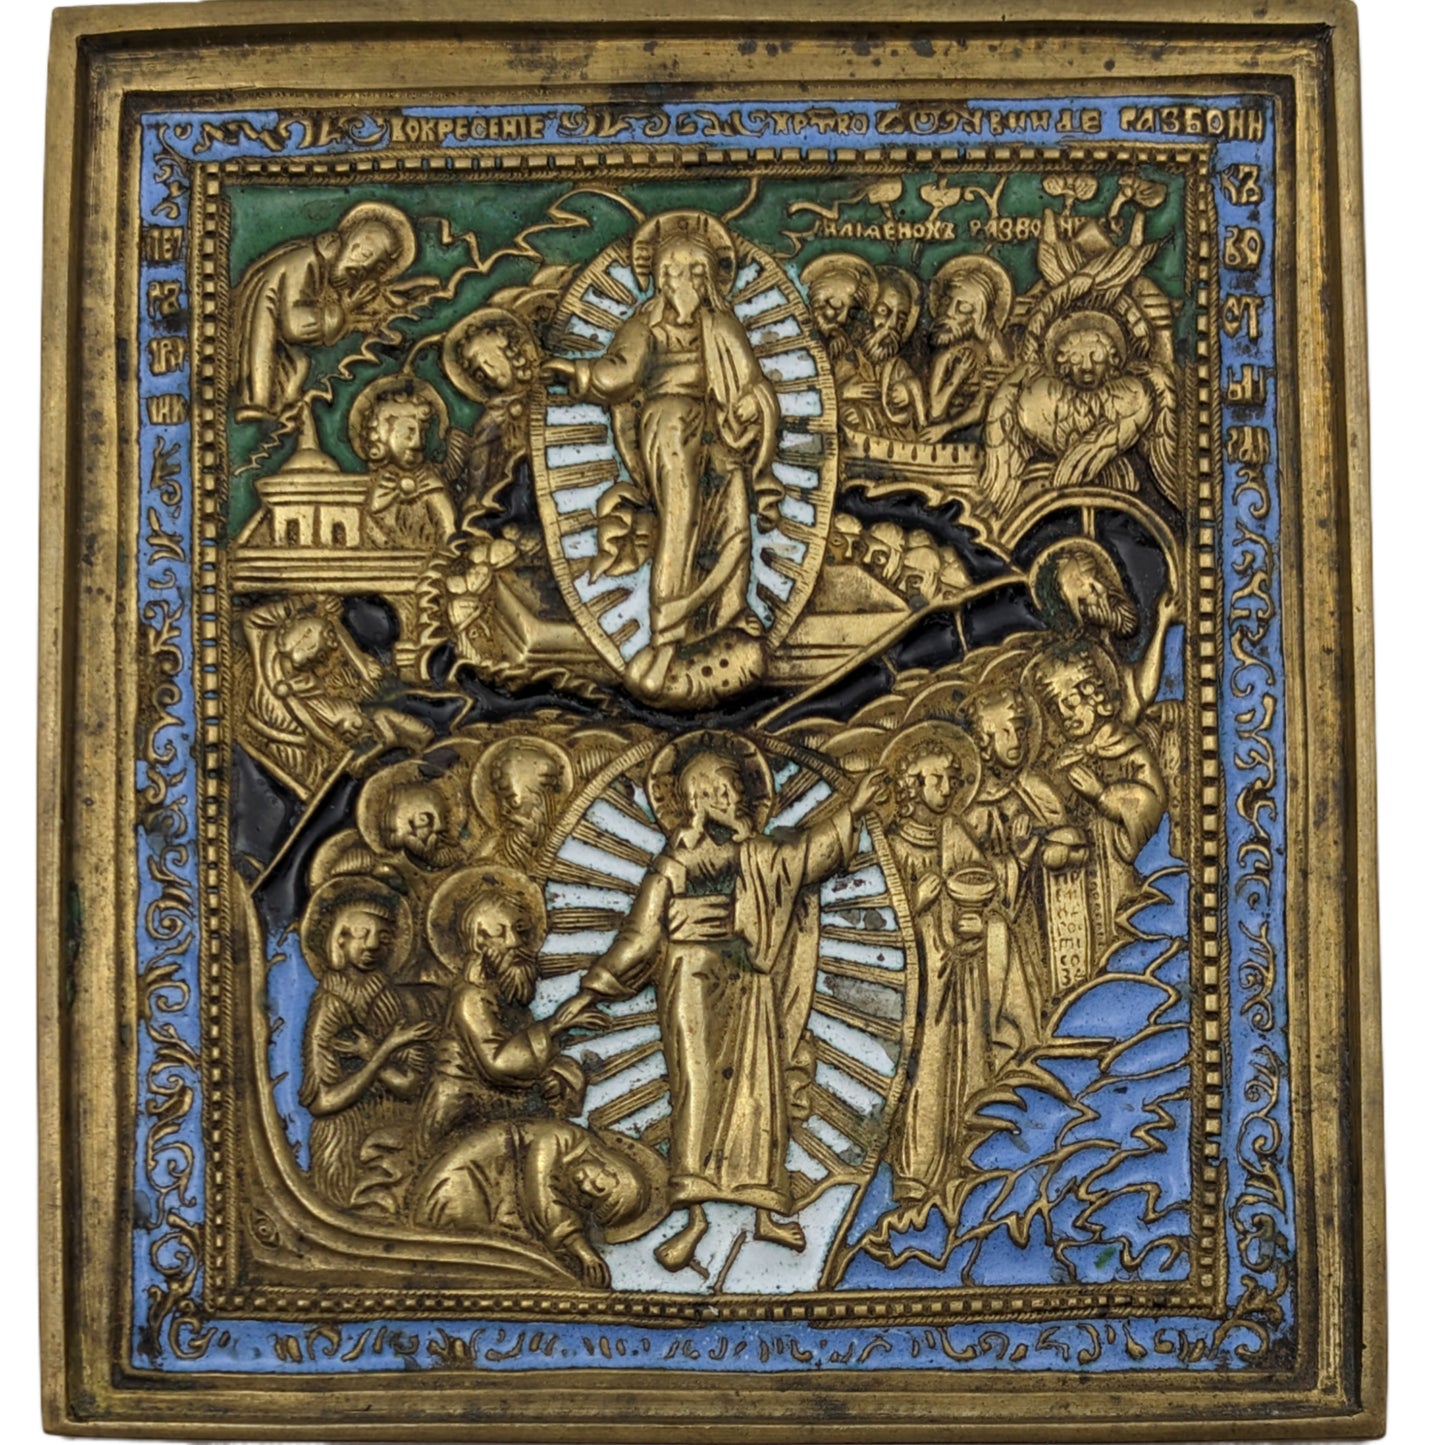 Reiseikone, 19. Jh., Auferstehung Christi, ca. 100 mm x 110 mm, Bronze, weiß, grün, schwarz und blau emailliert